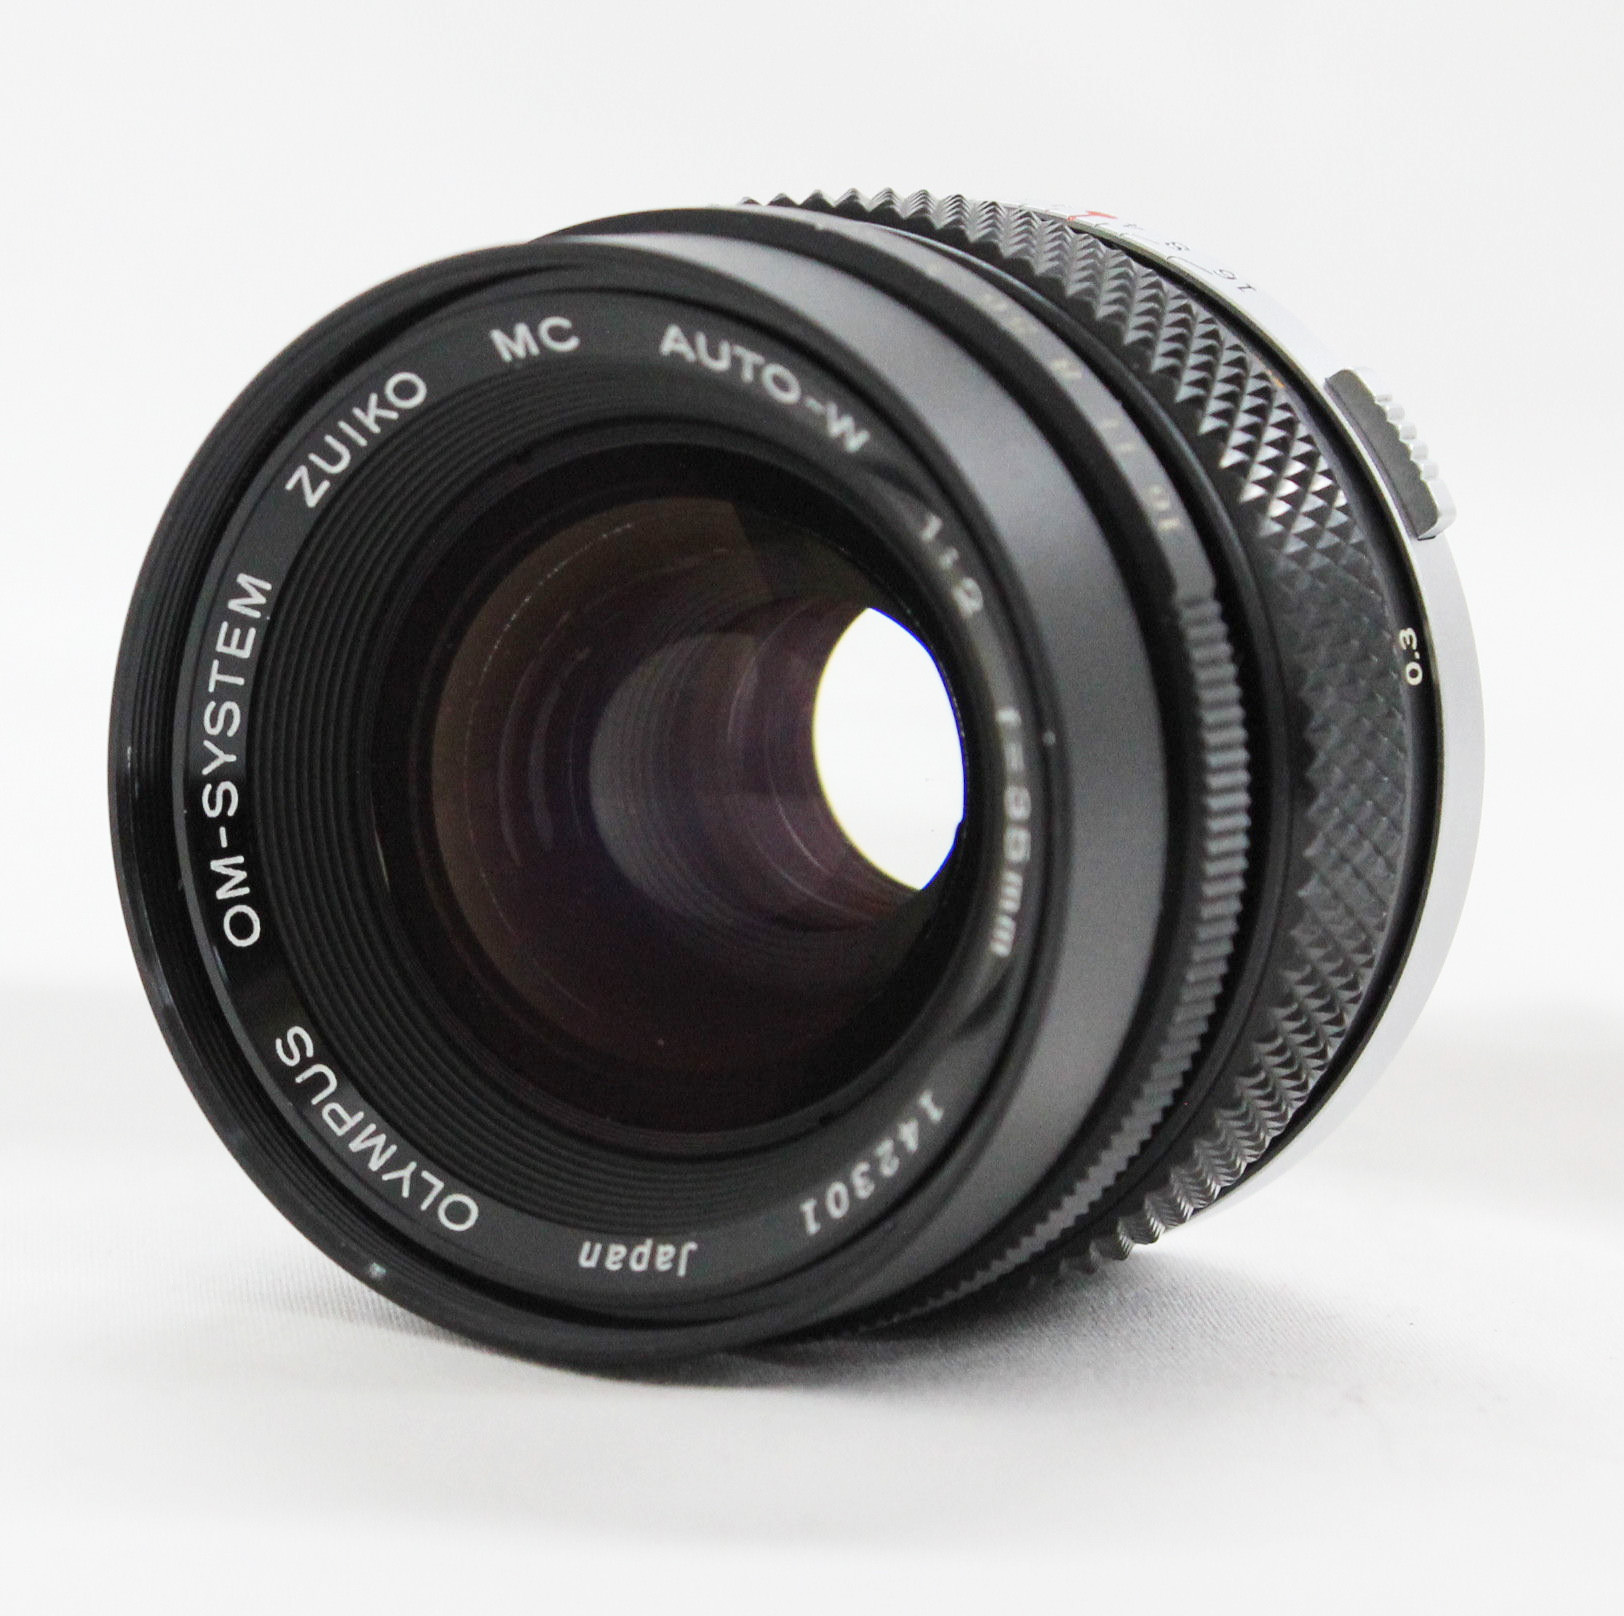 [Near Mint] Olympus OM-System Zuiko MC Auto-W 35mm F/2 MF Lens from Japan